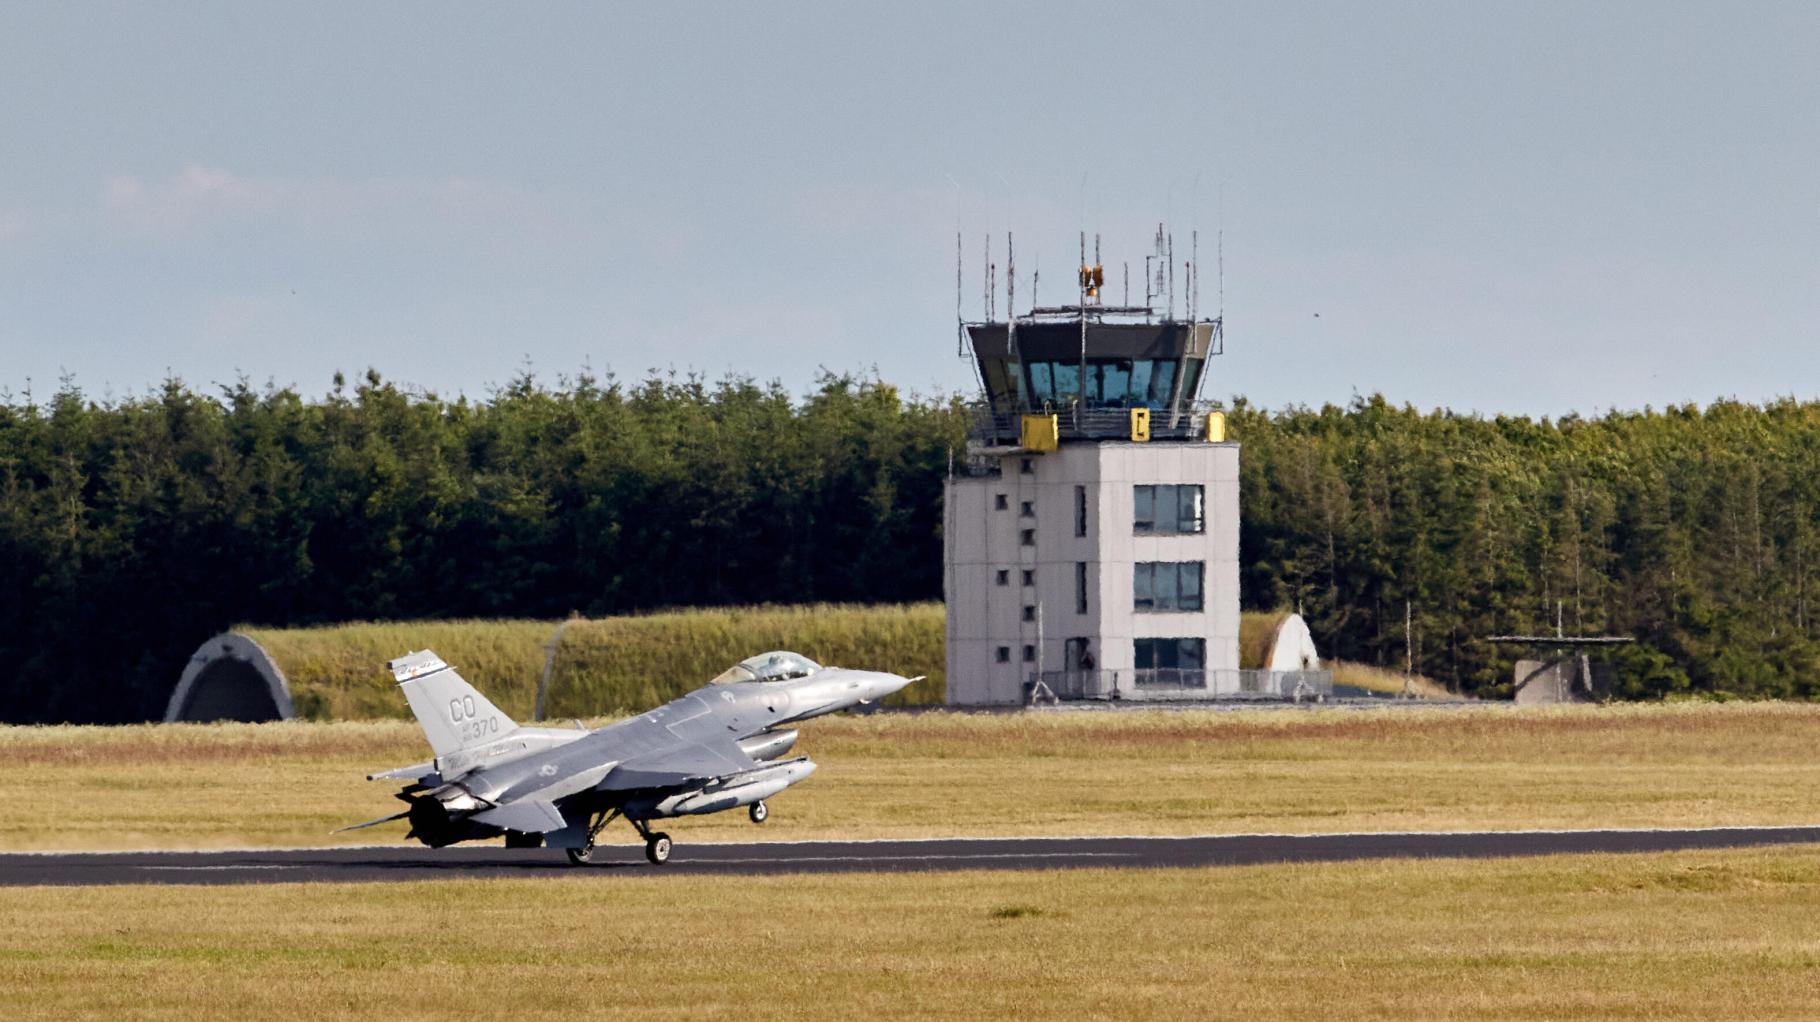 USA: Dänemark und Niederlande sollen F-16 schnell weitergeben können